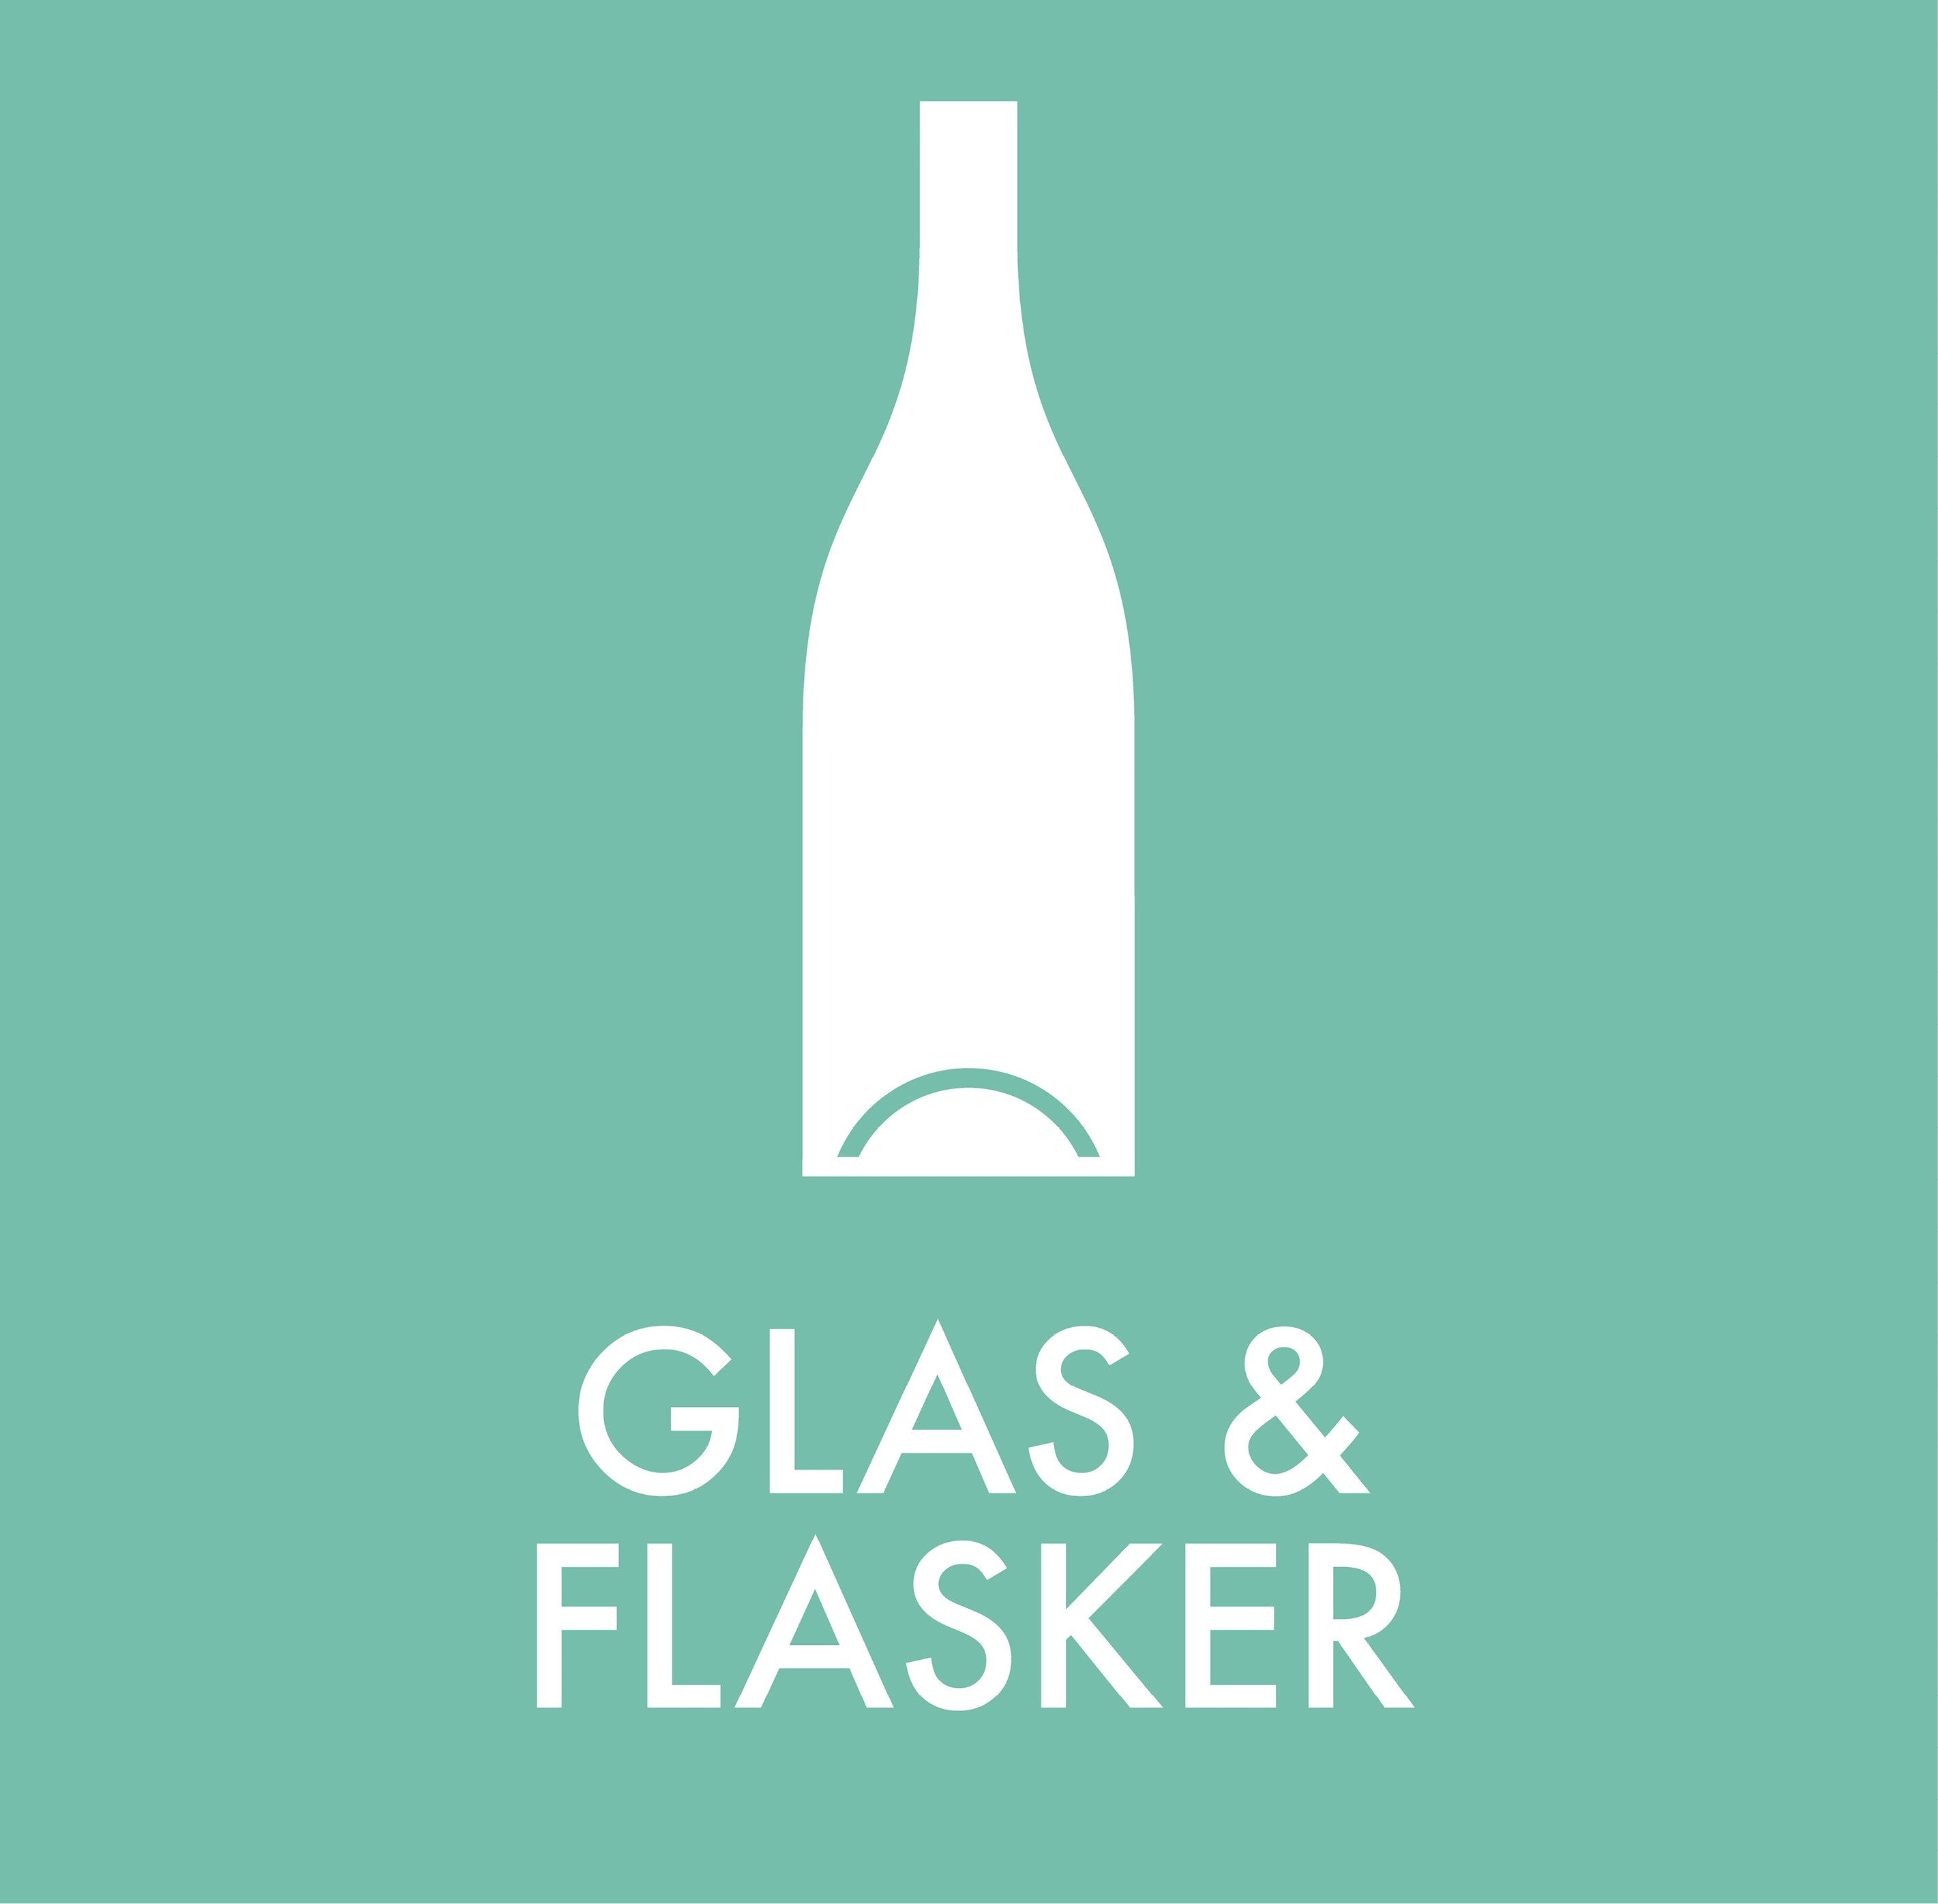 Glas & flasker